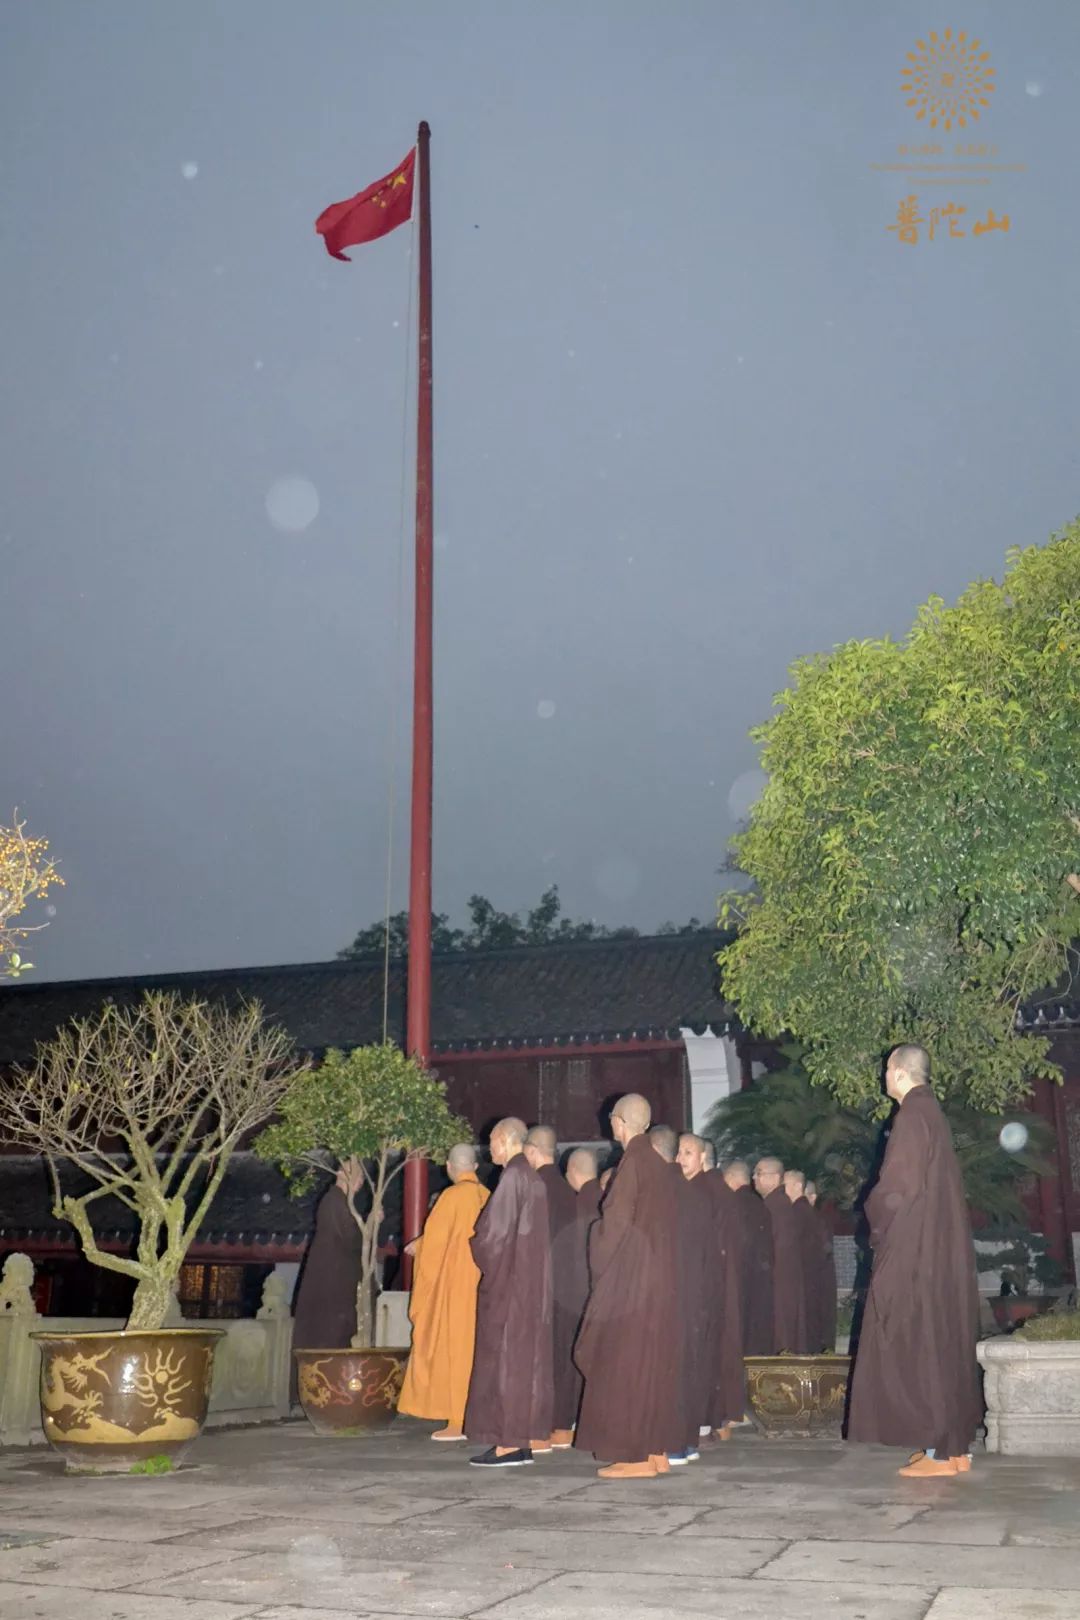 国家宪法日 浙江普陀山佛教协会举行升国旗仪式